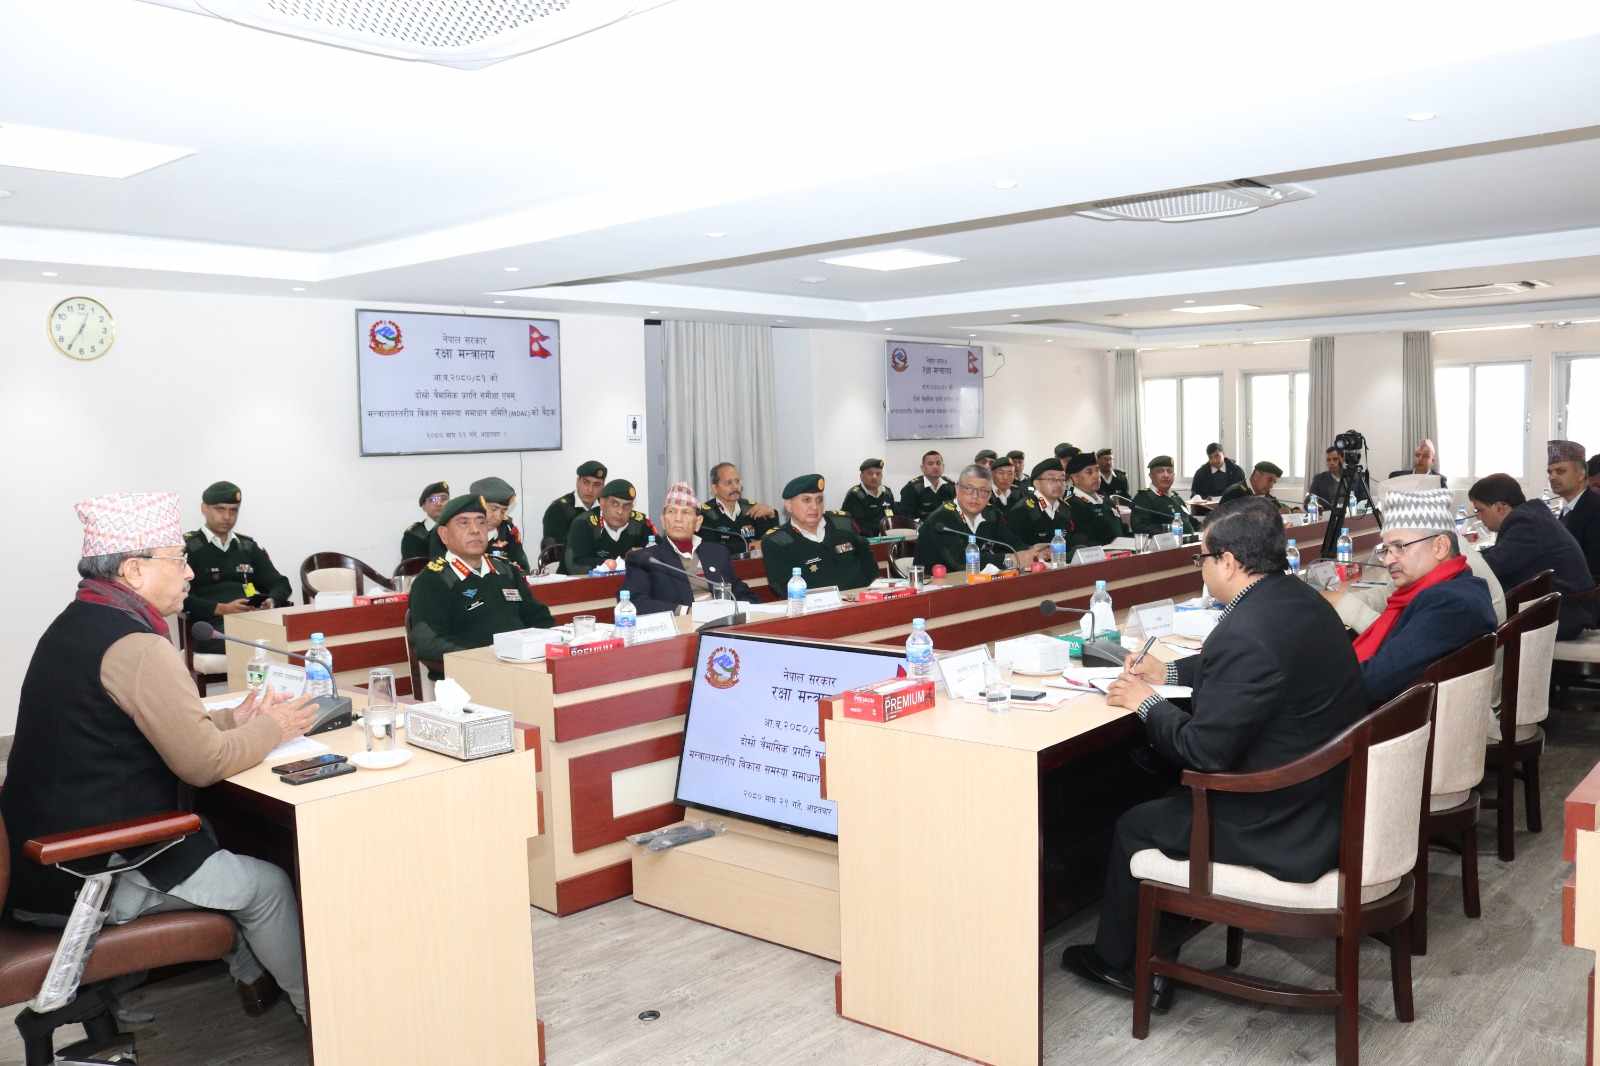 रक्षा मन्त्रालय र नेपाल सेनाअन्तर्गत सञ्चालित आयोजनाको प्रगति सन्तोषजनक छ : उपप्रधानमन्त्री खड्का